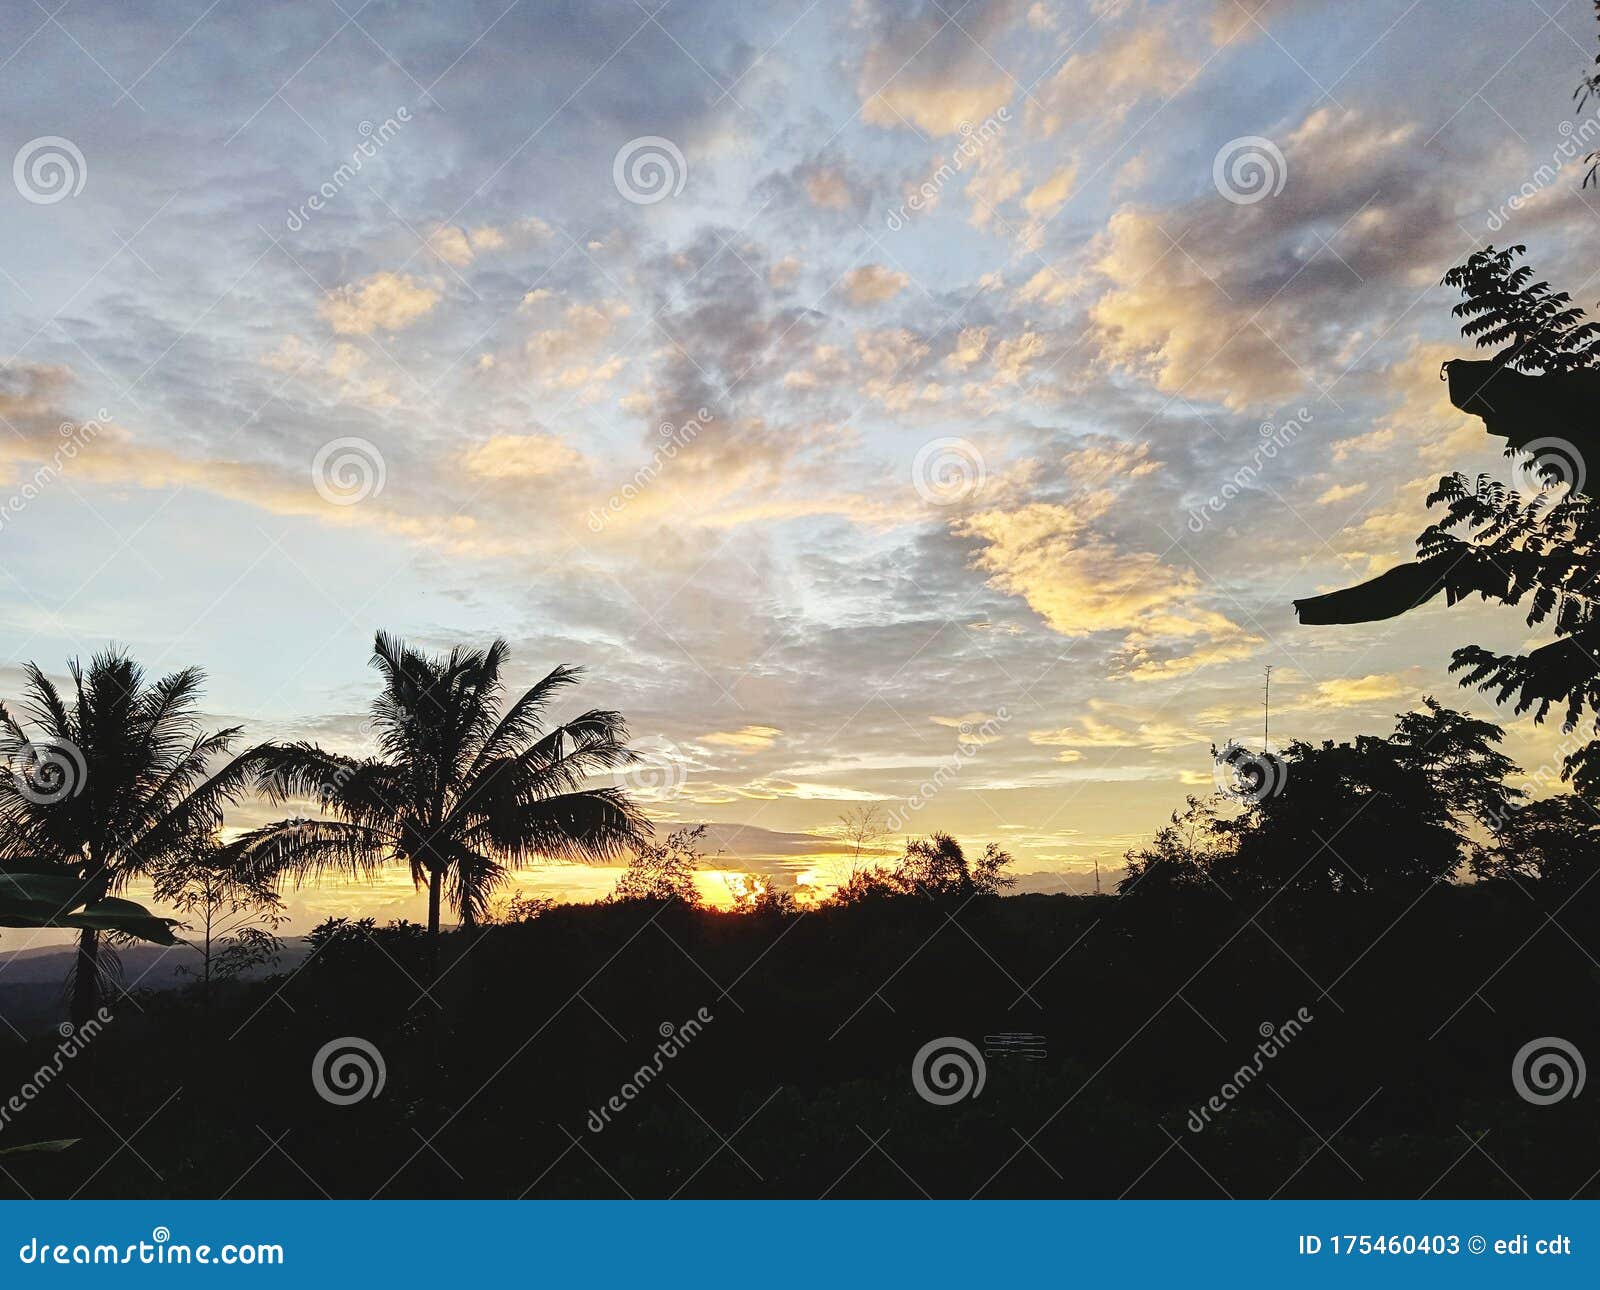 Pemandangan Sunset Sore Hari Yang Indah Stock Image Image Of Indah Pemandangan 175460403